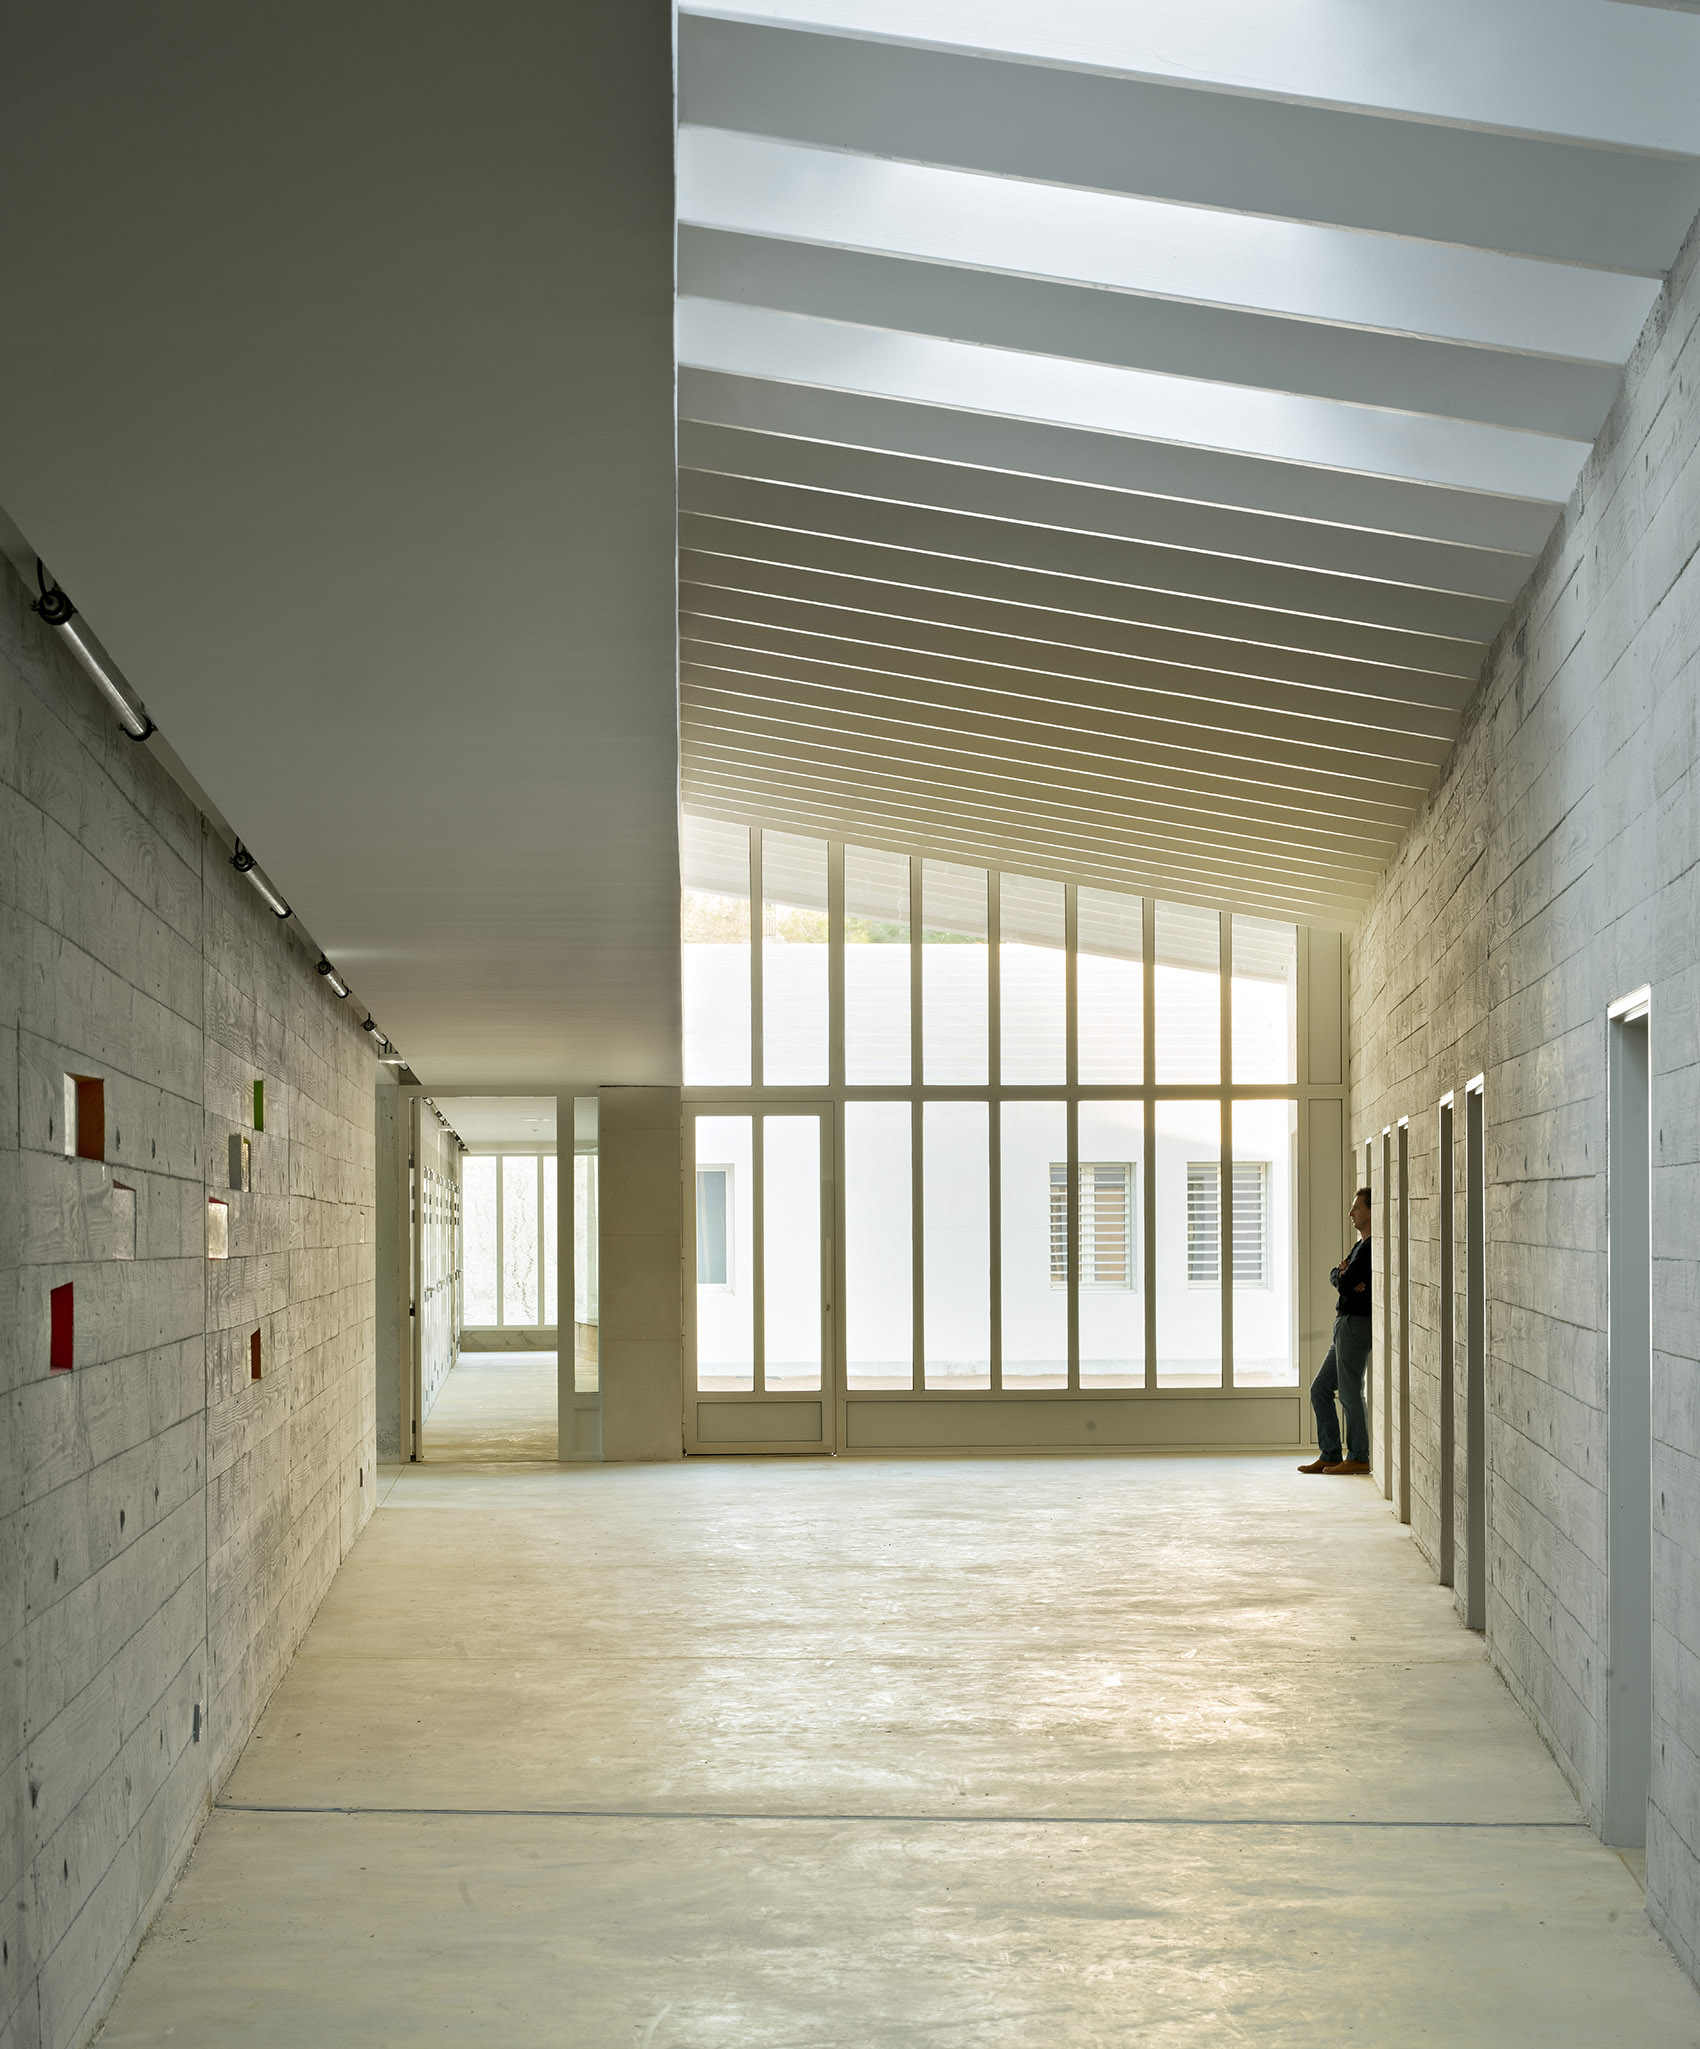 juvenile detention center architecture thesis